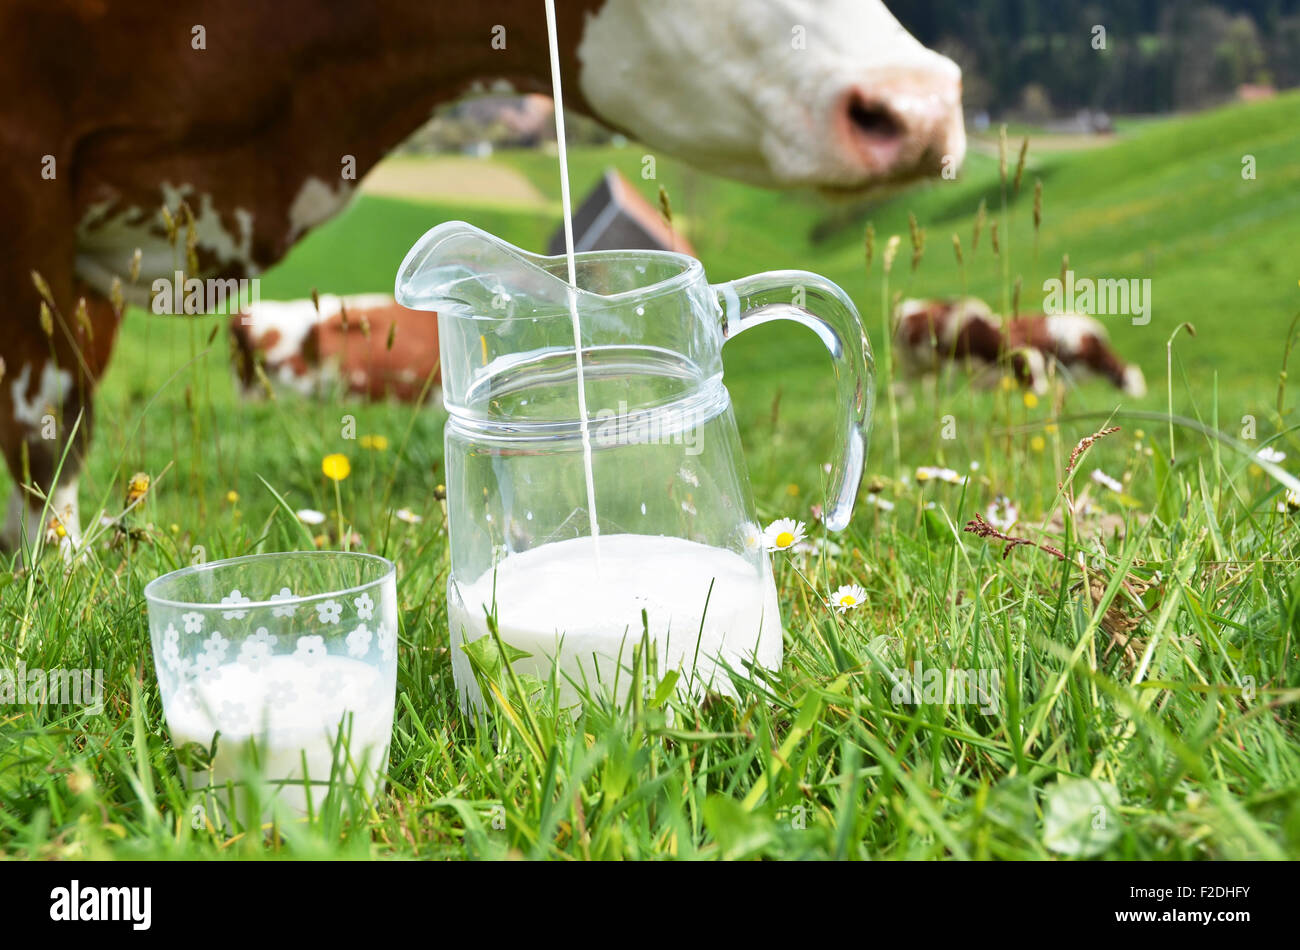 Le lait et les vaches. Région de l'Emmental, Suisse Banque D'Images